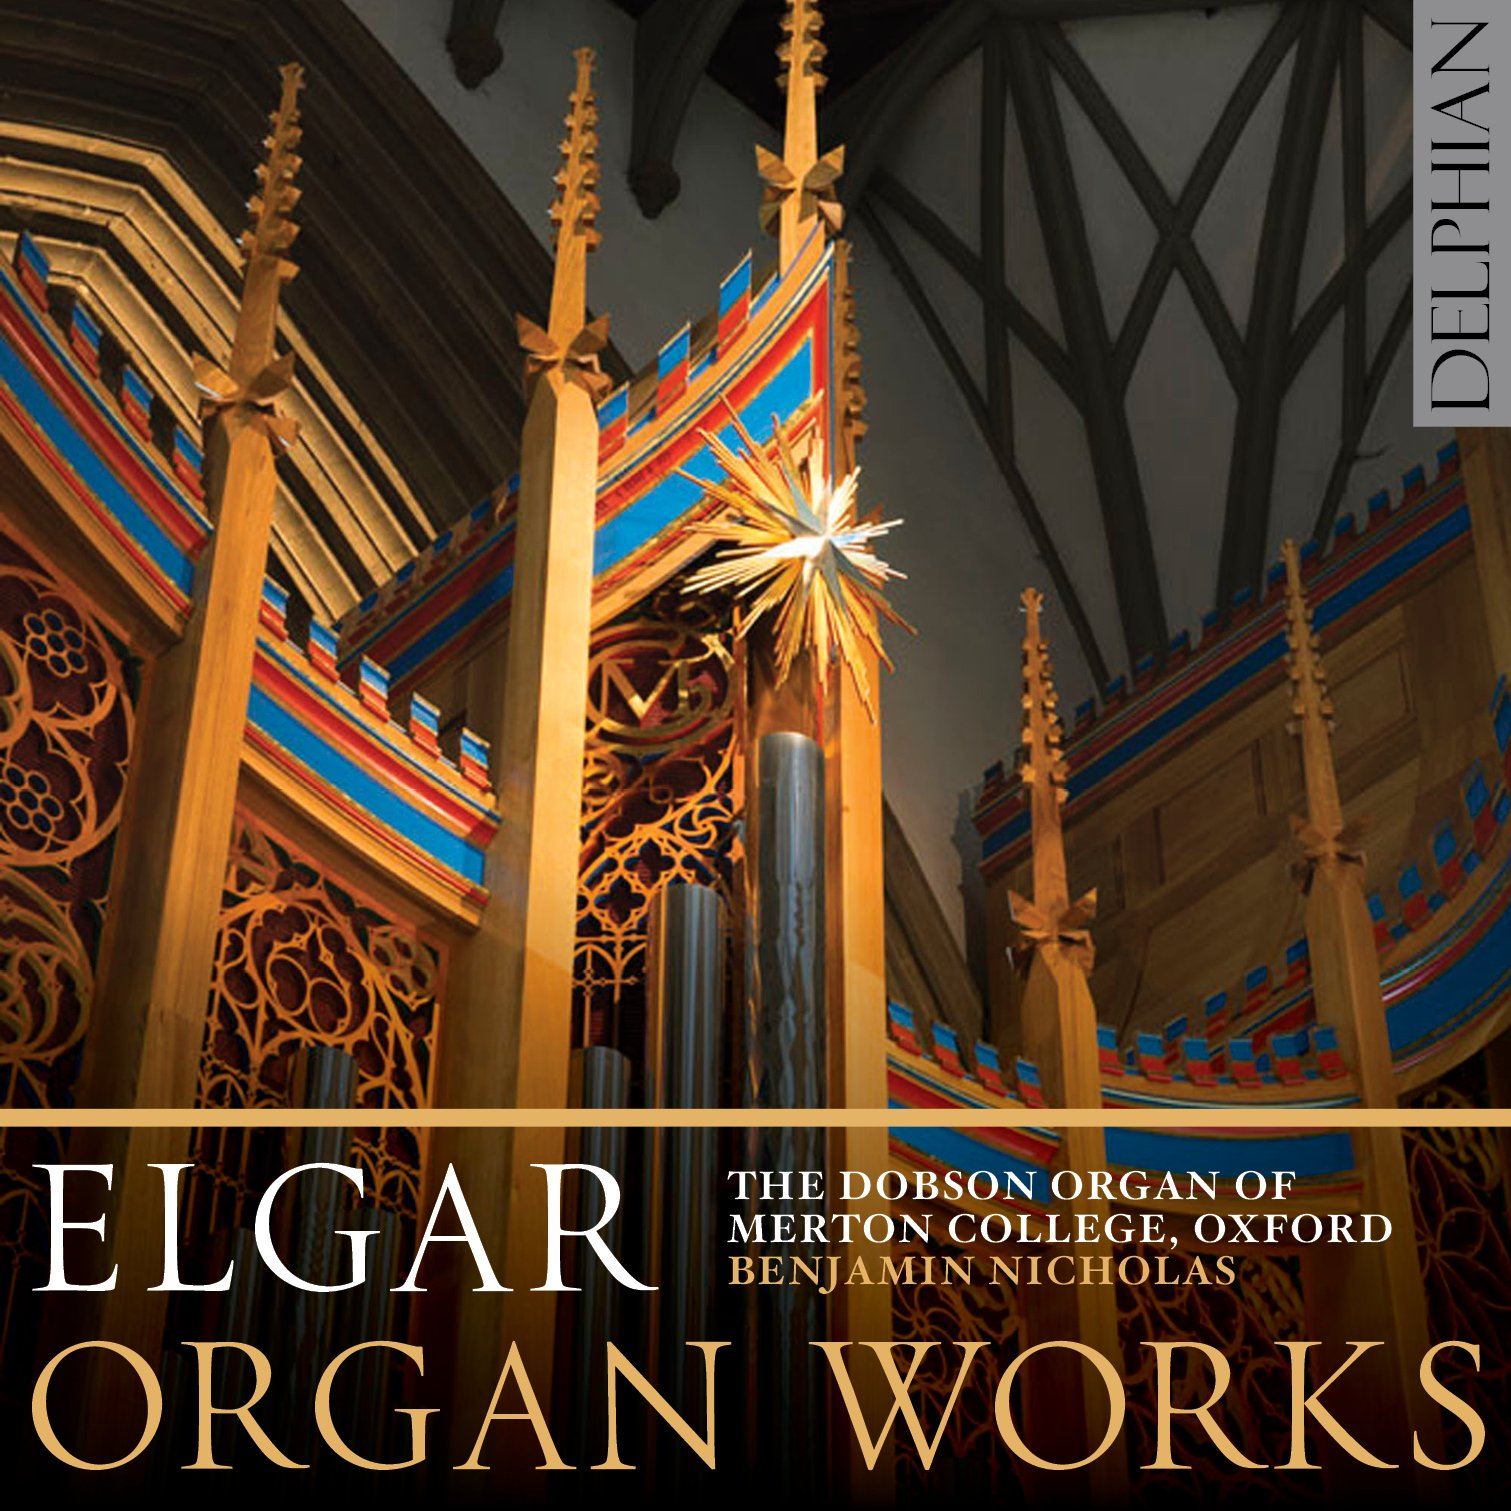 Elgar: Organ Works CD Delphian Records